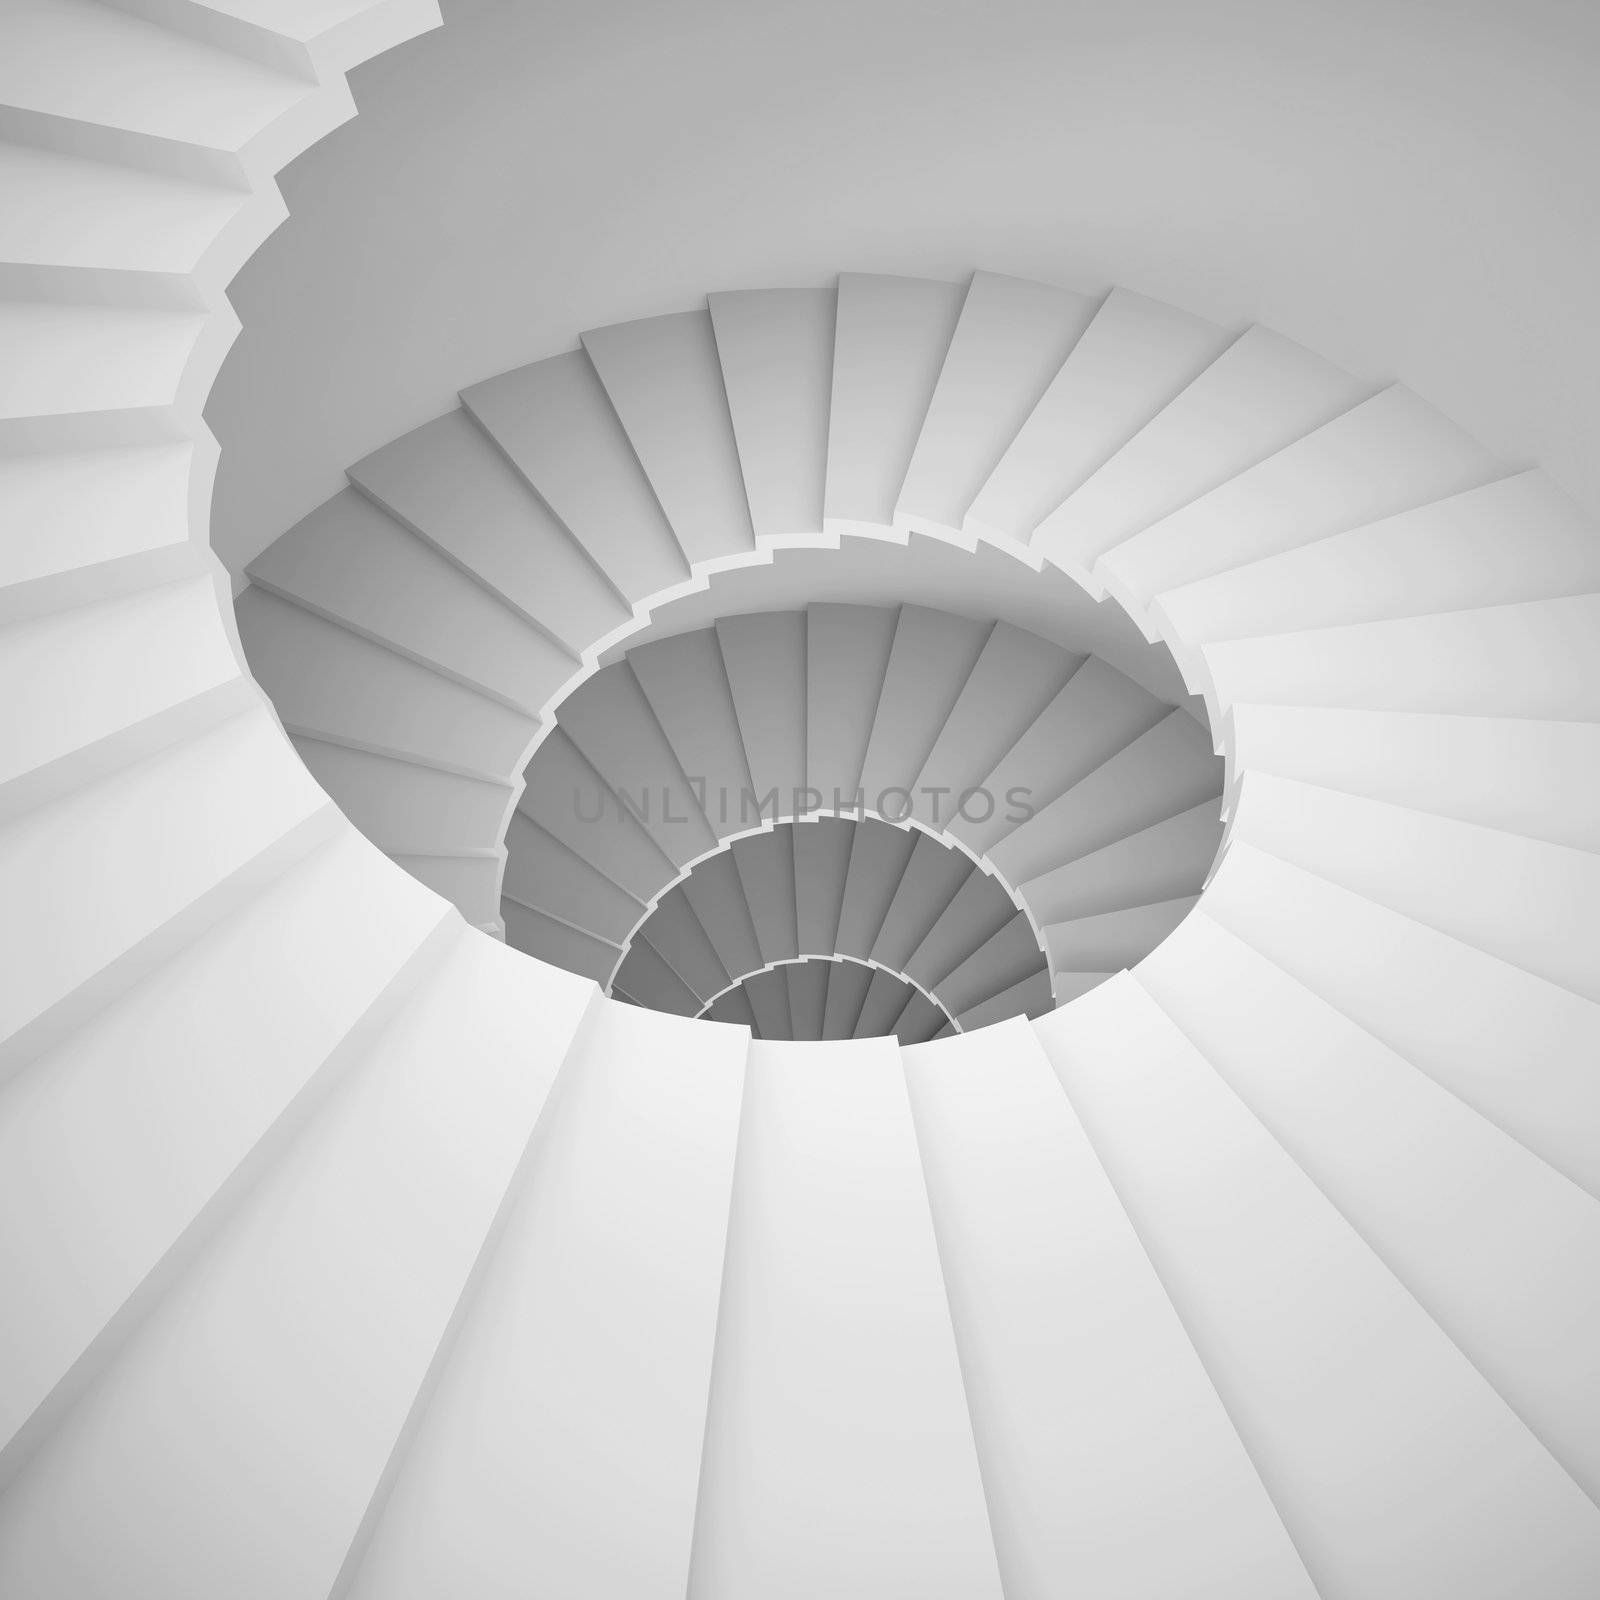 Spiral Staircase by maxkrasnov